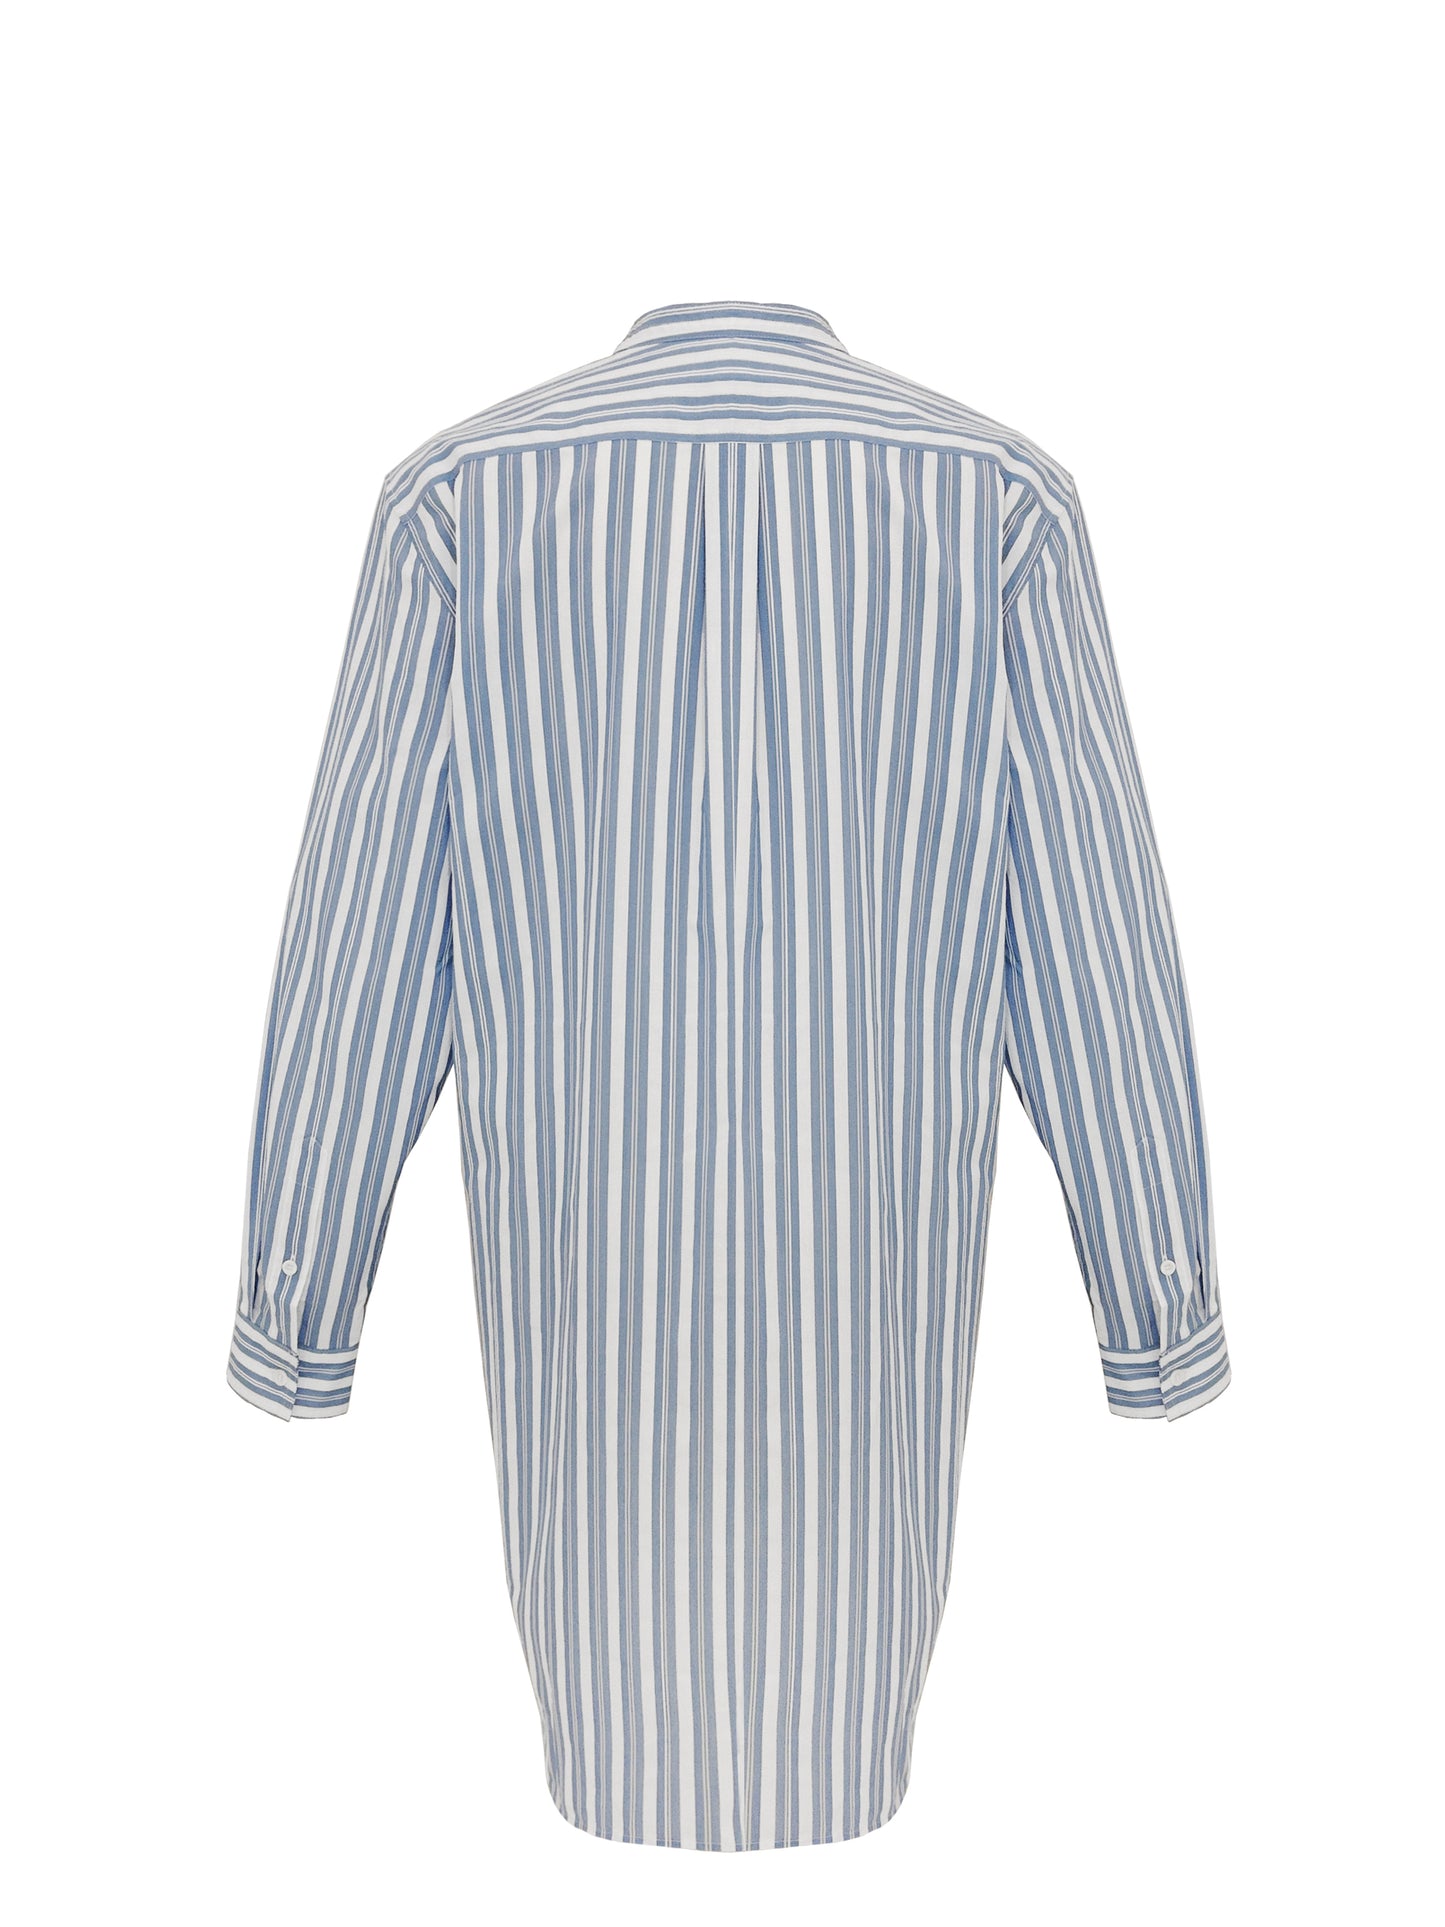 Diese leichte Bluse aus Baumwolle von TOTEME ist perfekt für die sonnigen Tage und lässt sich durch den weichen und dünnen Stoff sehr angenehm tragen. Der leichte blaue Farbton ist vielseitig kombinierbar und ergänzt perfekt sommerliche Outfits. Für uns lässt sich die Bluse bspw. super mit einer hellen Jeans von Toteme und weißen Sneakers von Maison Margiela kombinieren.